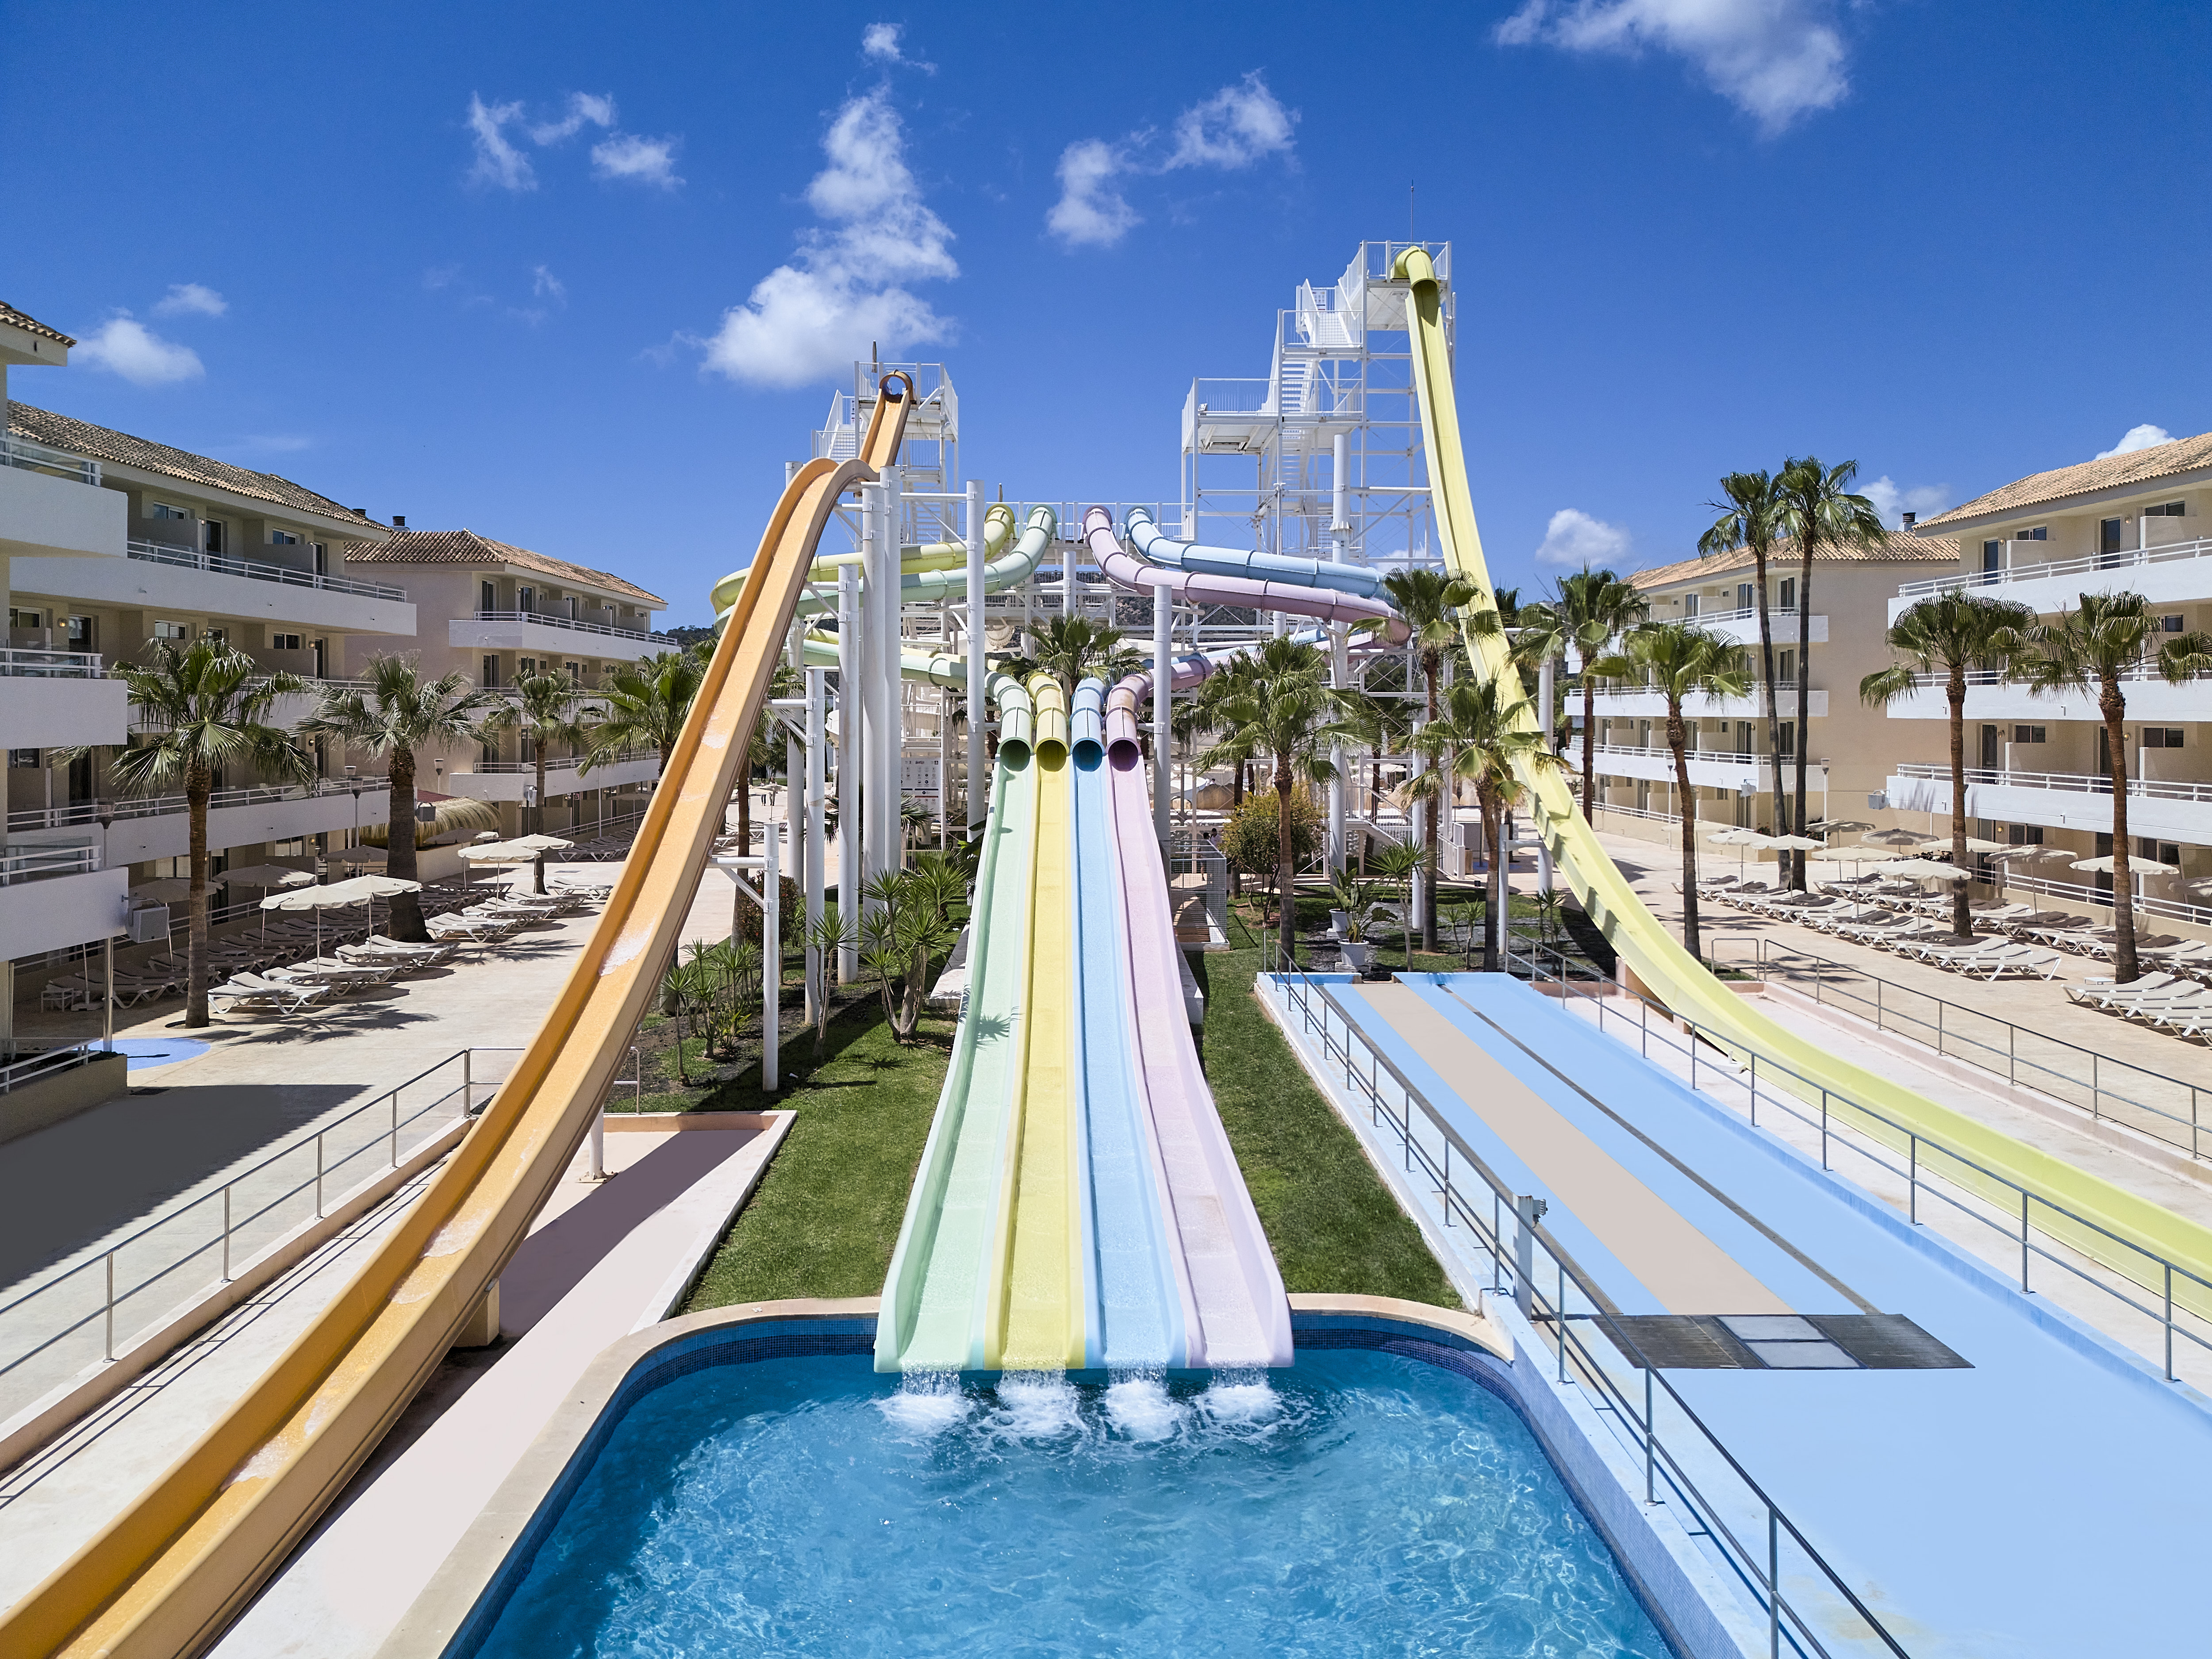 Profitez de cinq nuits au tout nouveau parc aquatique 4* FERGUS Club Mallorca à Majorque, Espagne